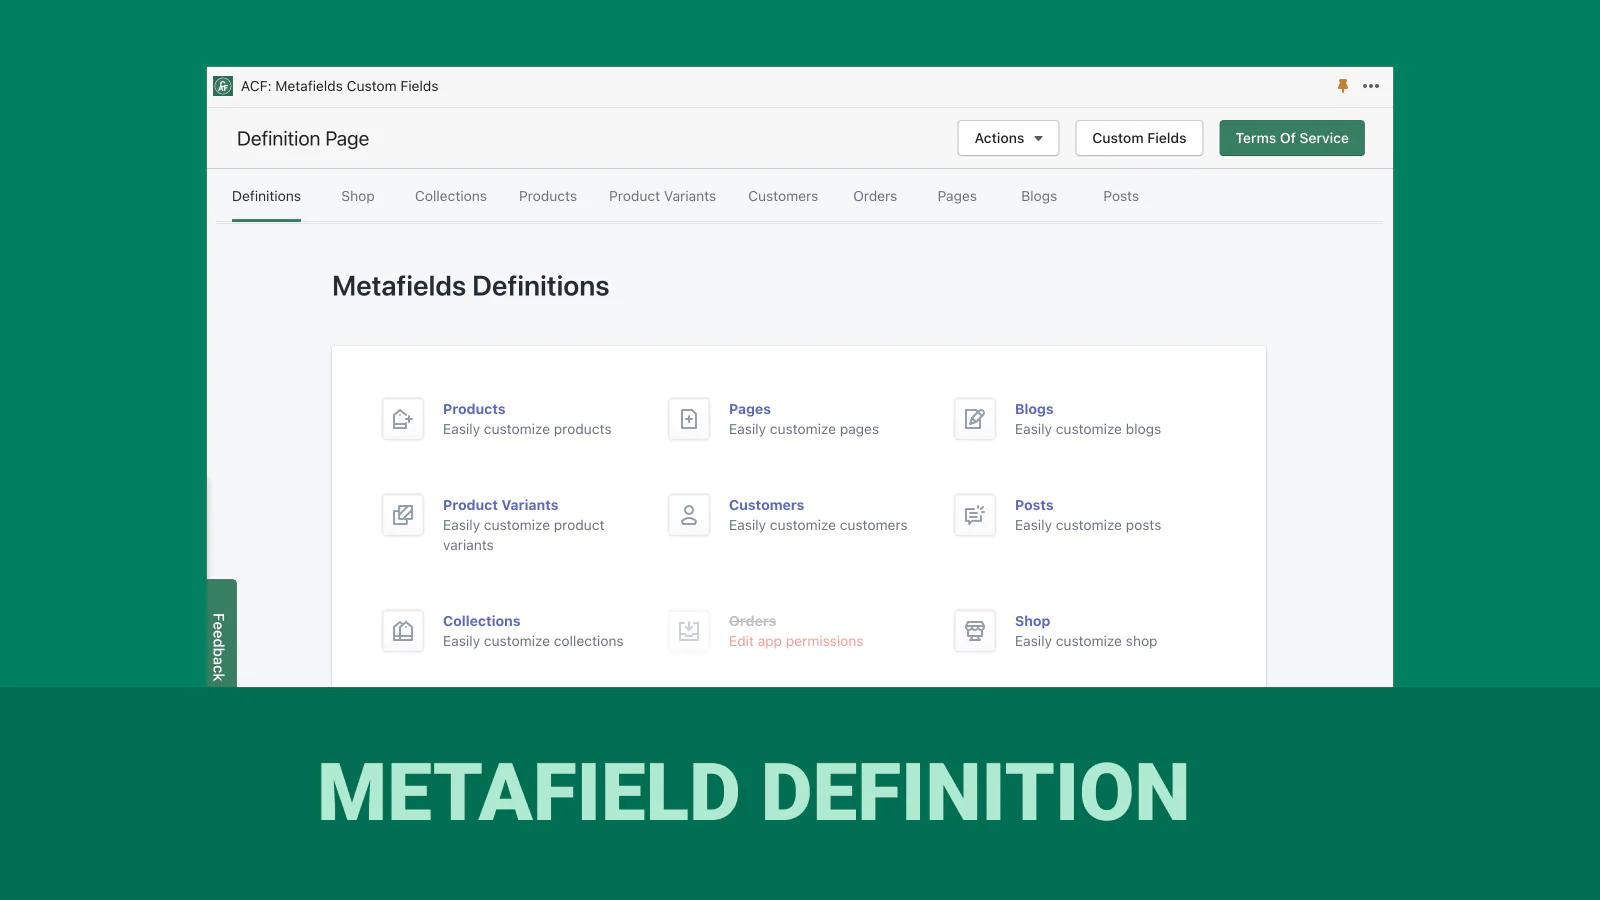 acf-metafields-custom-fields-definition